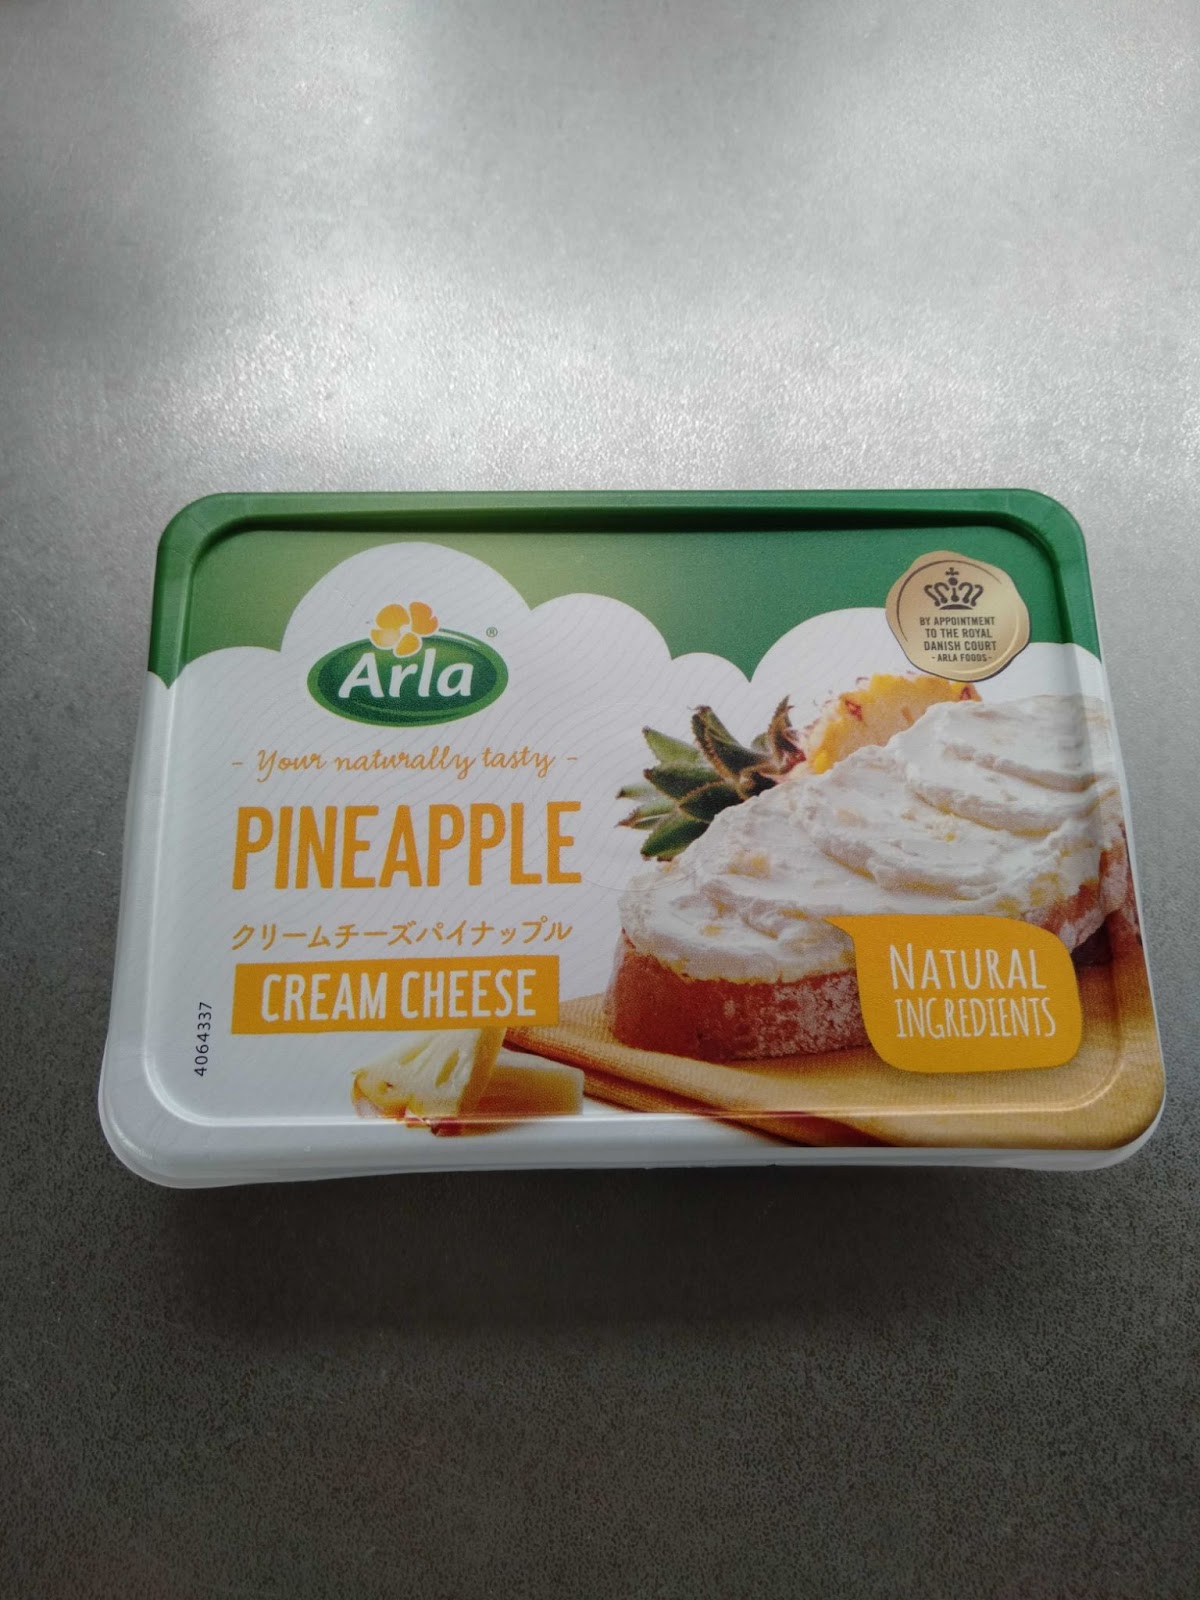 Arlaのクリームチーズパイナップル